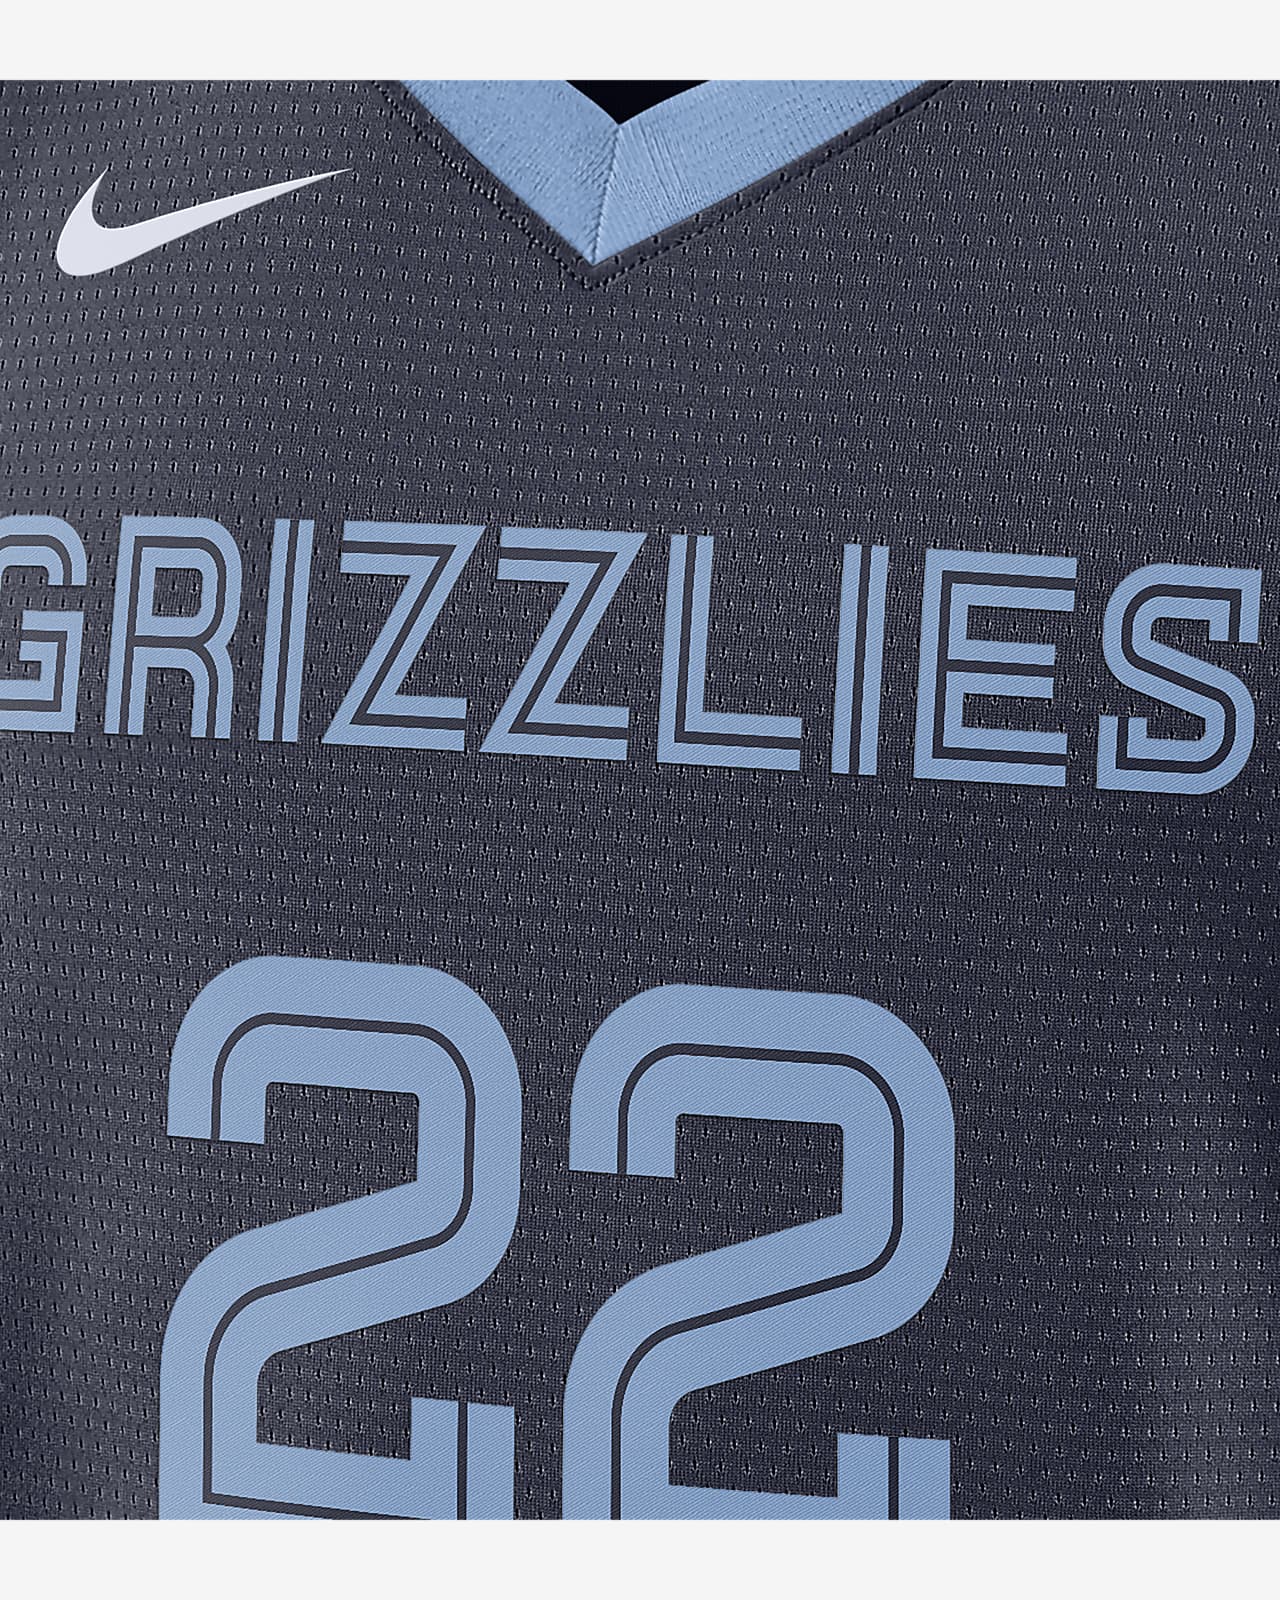 2022 23 memphis grizzlies